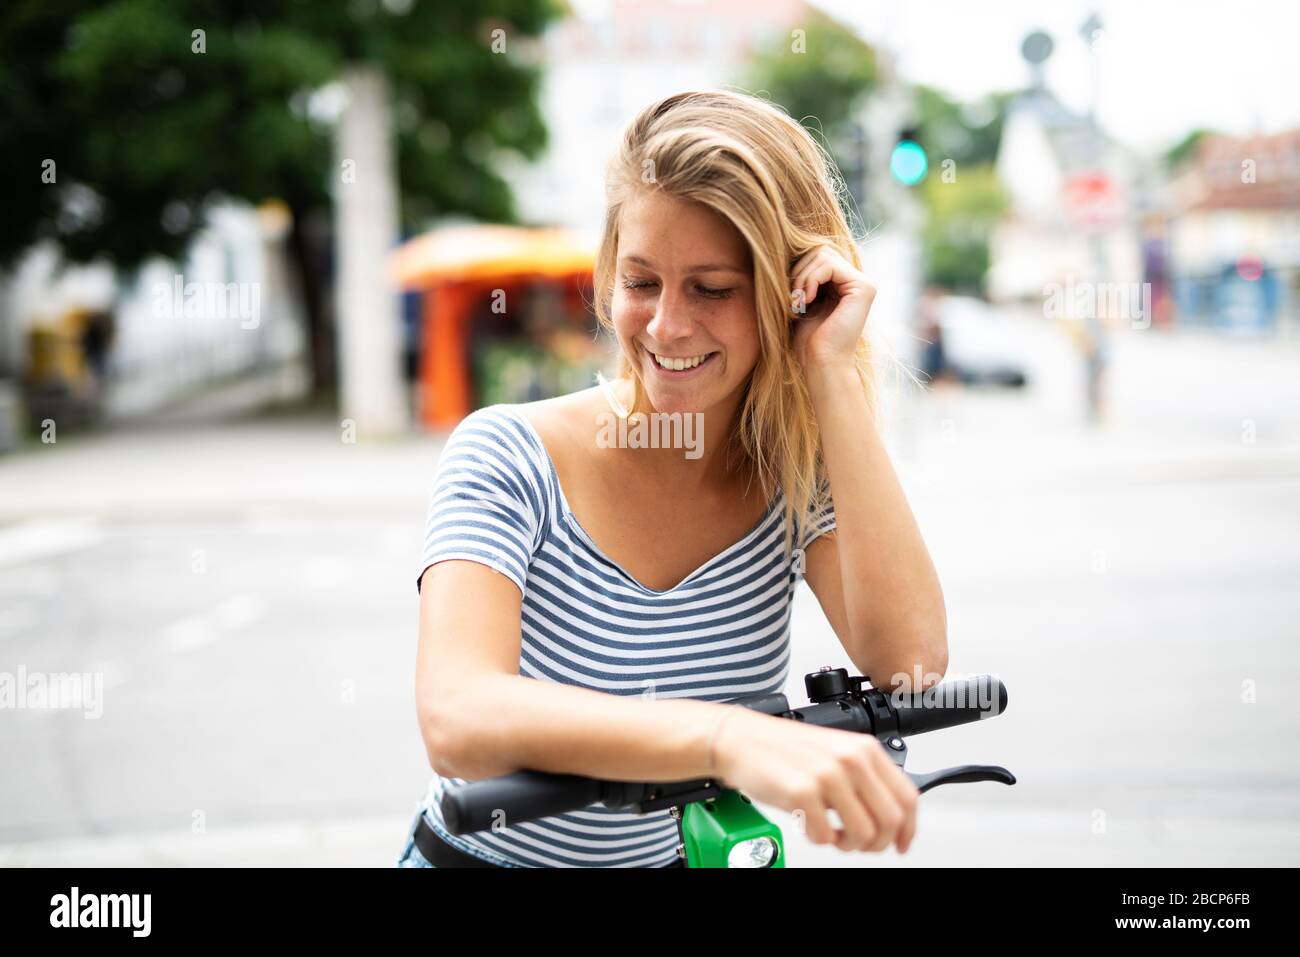 Une jolie jeune femme voyage en ville avec un scooter électrique Banque D'Images